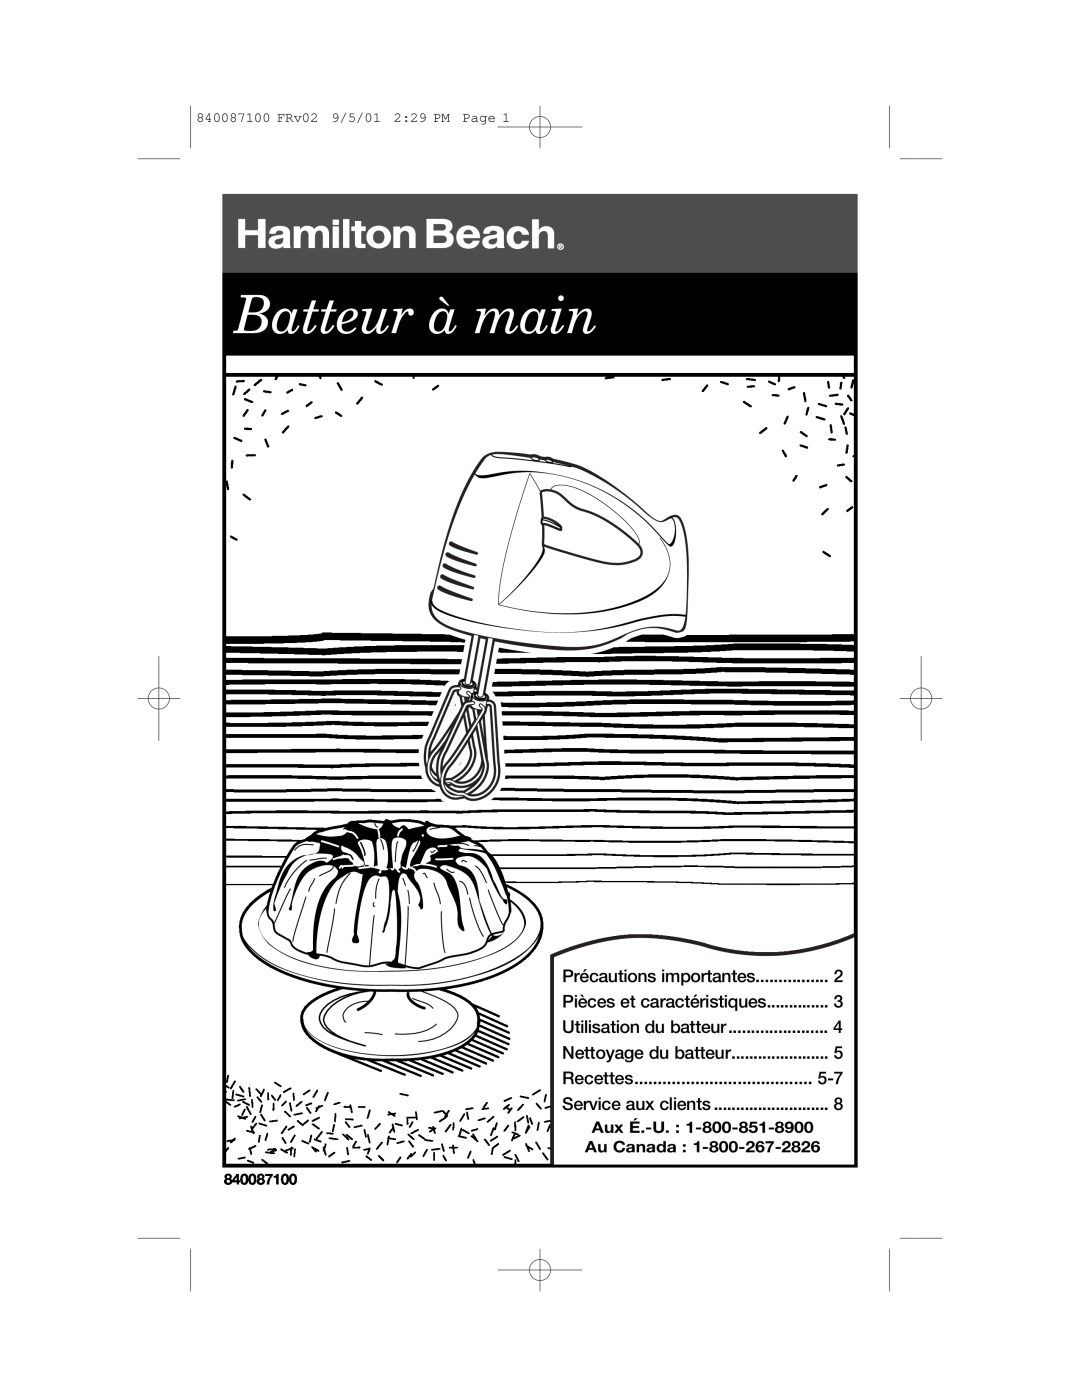 Hamilton Beach 62000 Batteur à main, Précautions importantes, Pièces et caractéristiques, Utilisation du batteur, Recettes 